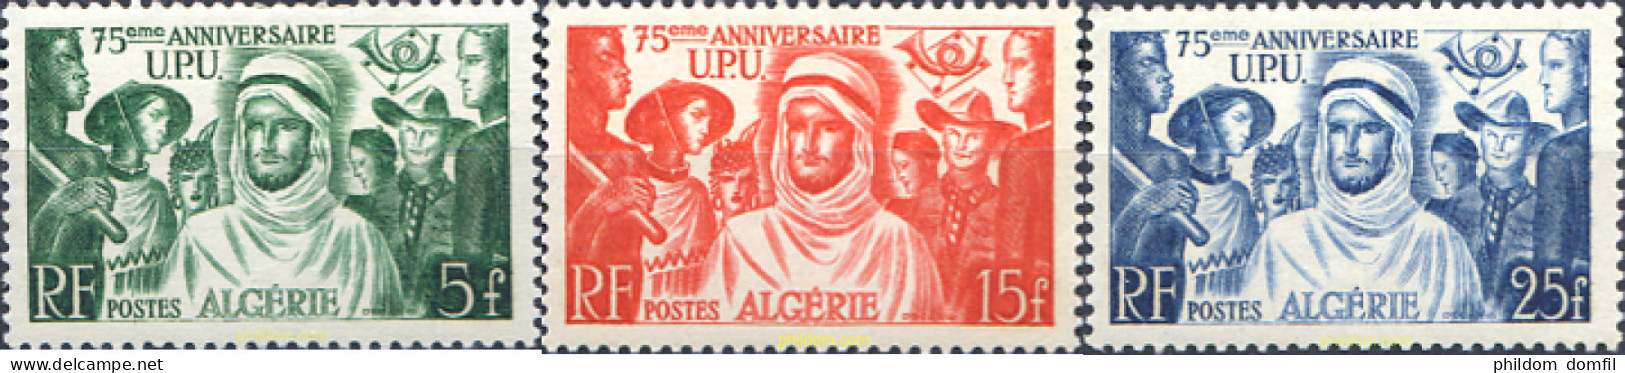 343182 HINGED ARGELIA 1949 75 ANIVERSARIO DE LA UNION POSTAL UNIVERSAL - Argelia (1962-...)